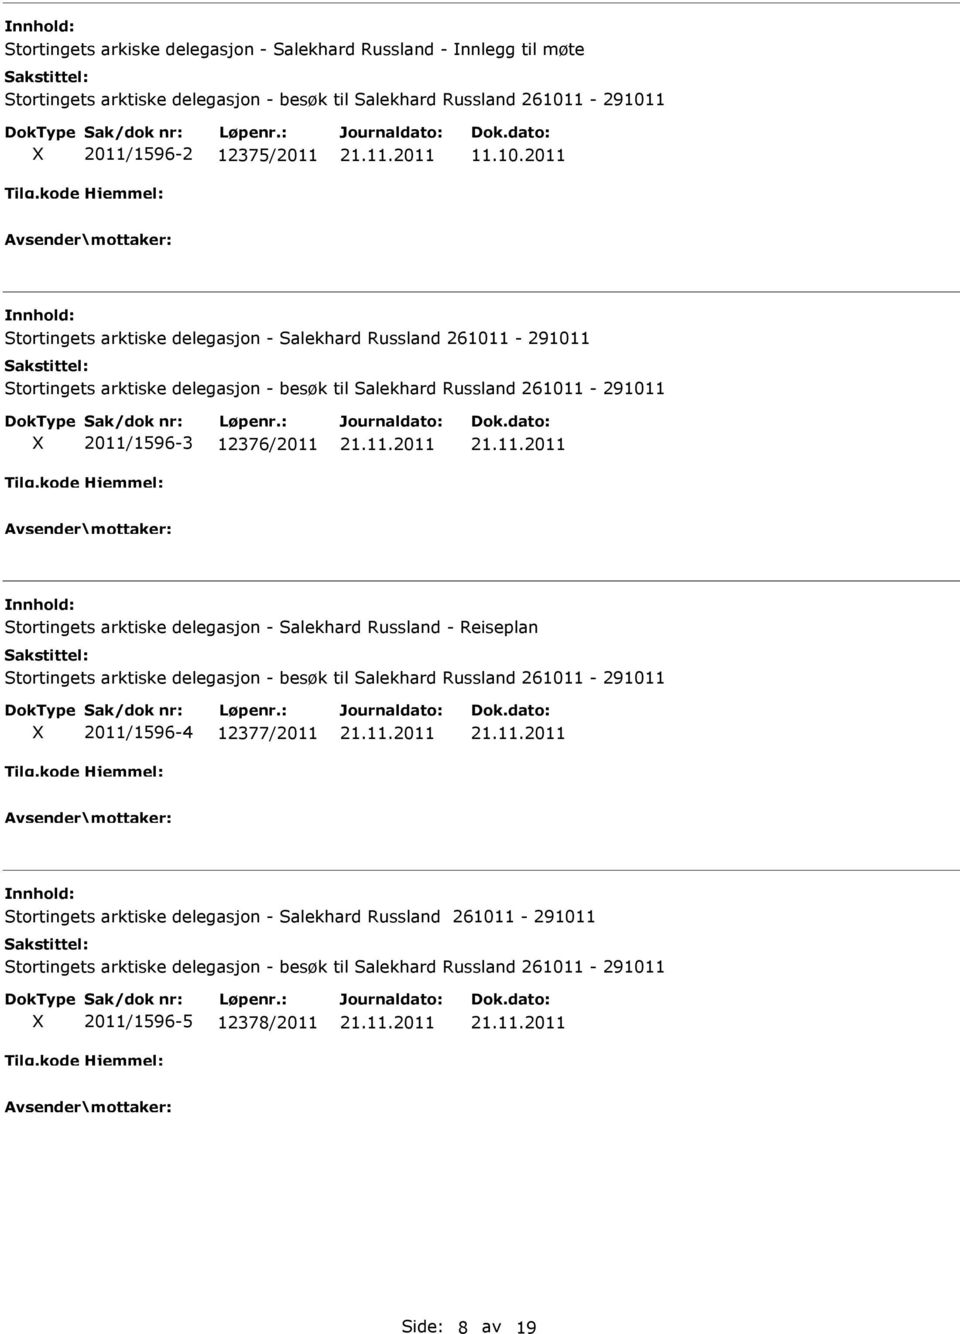 12376/2011 Stortingets arktiske delegasjon - Salekhard Russland - Reiseplan Stortingets arktiske delegasjon - besøk til Salekhard Russland 261011-291011 2011/1596-4